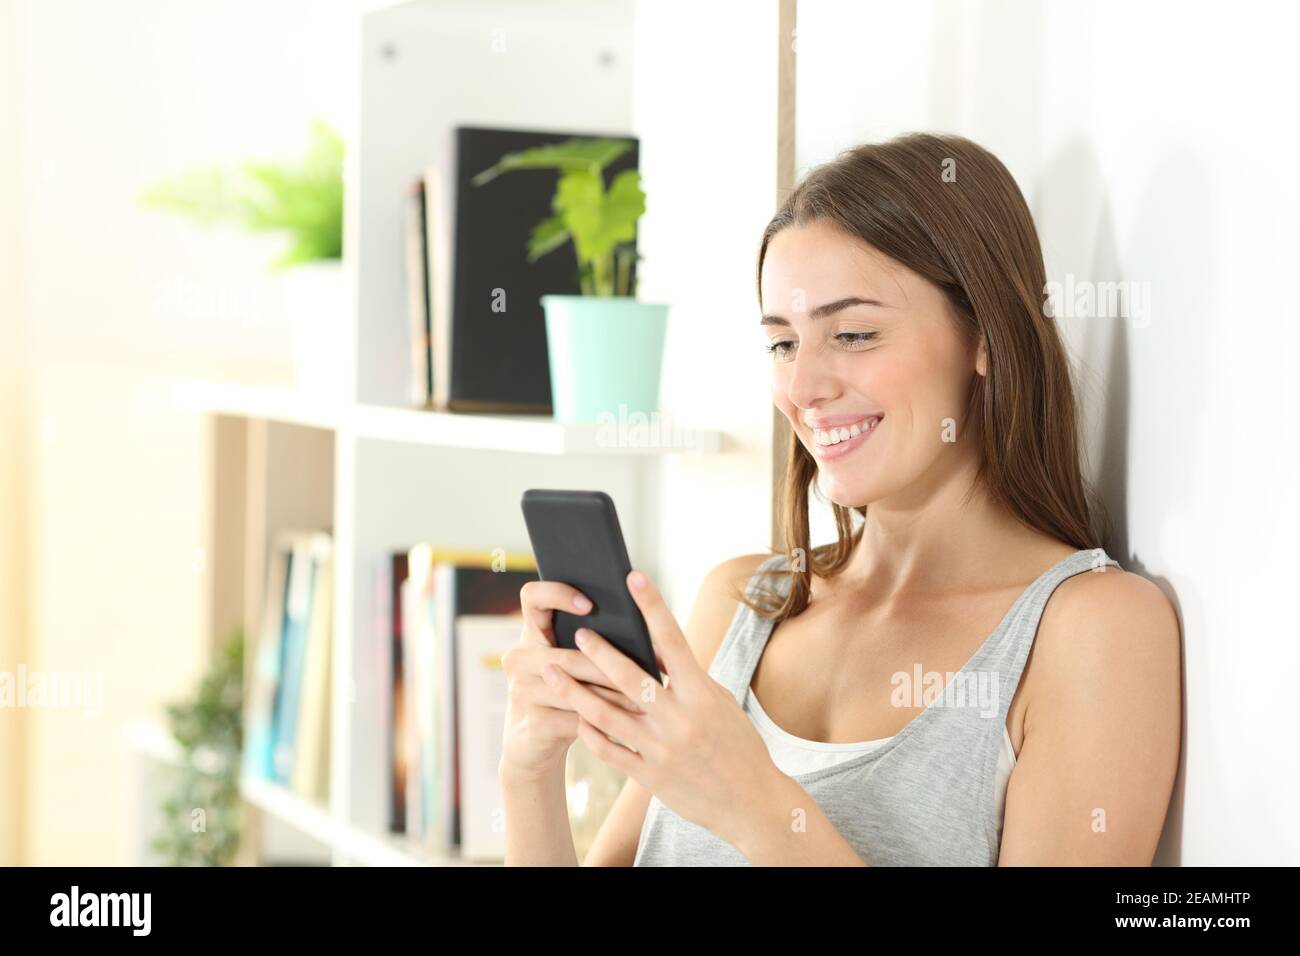 L'adolescent heureux utilise un smartphone à la maison Banque D'Images